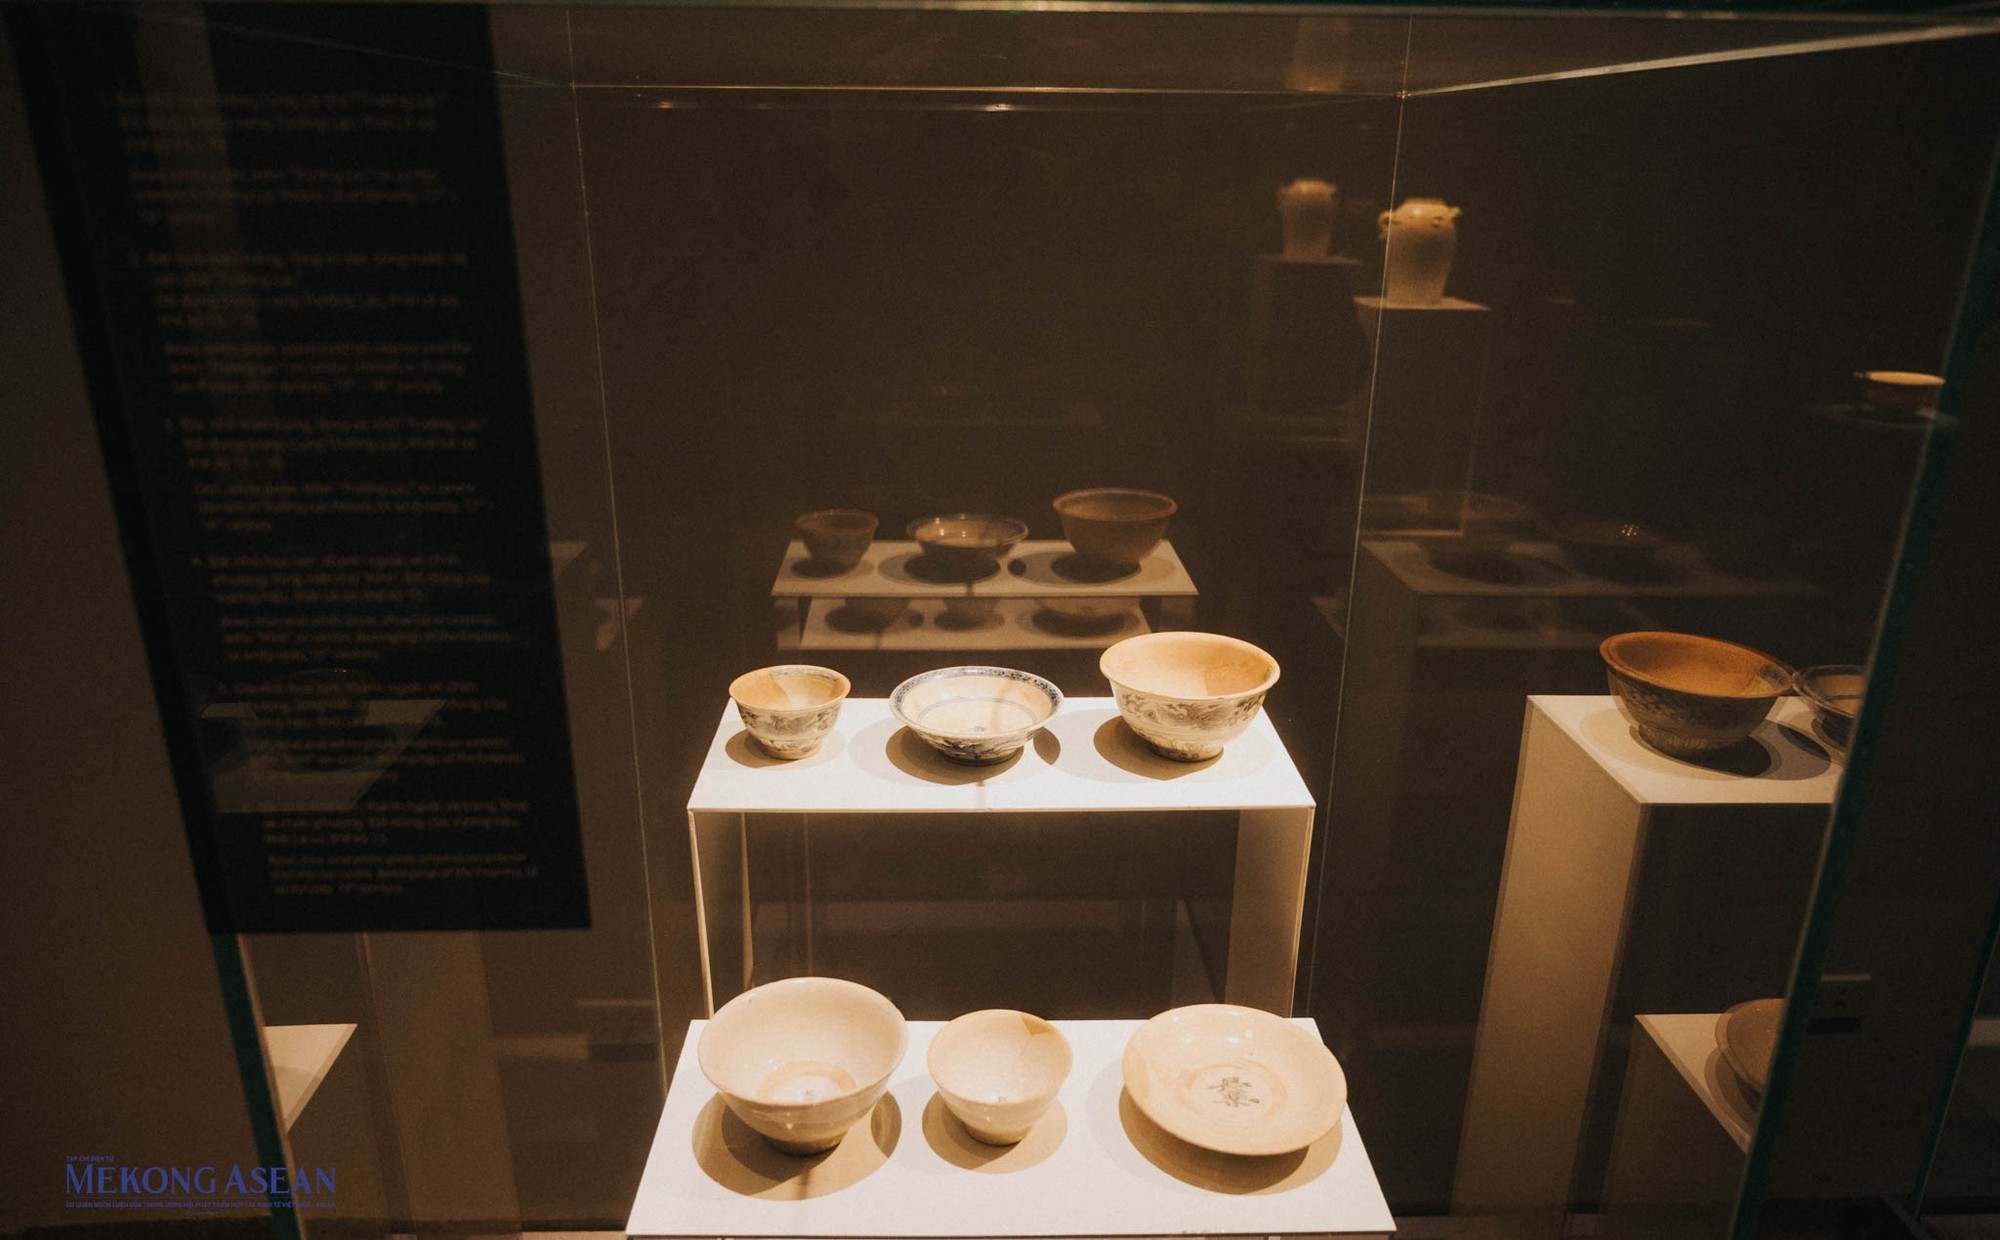 Nhiều đồ dùng chế tác riêng cho nhà vua thời Lê Sơ như đĩa lớn, đĩa nhỏ, bát gốm... với thành ngoài vẽ văn cánh sen, thành ngoài và trong lòng vẽ rồng, biểu tượng dành riêng cho các vị hoàng đế.